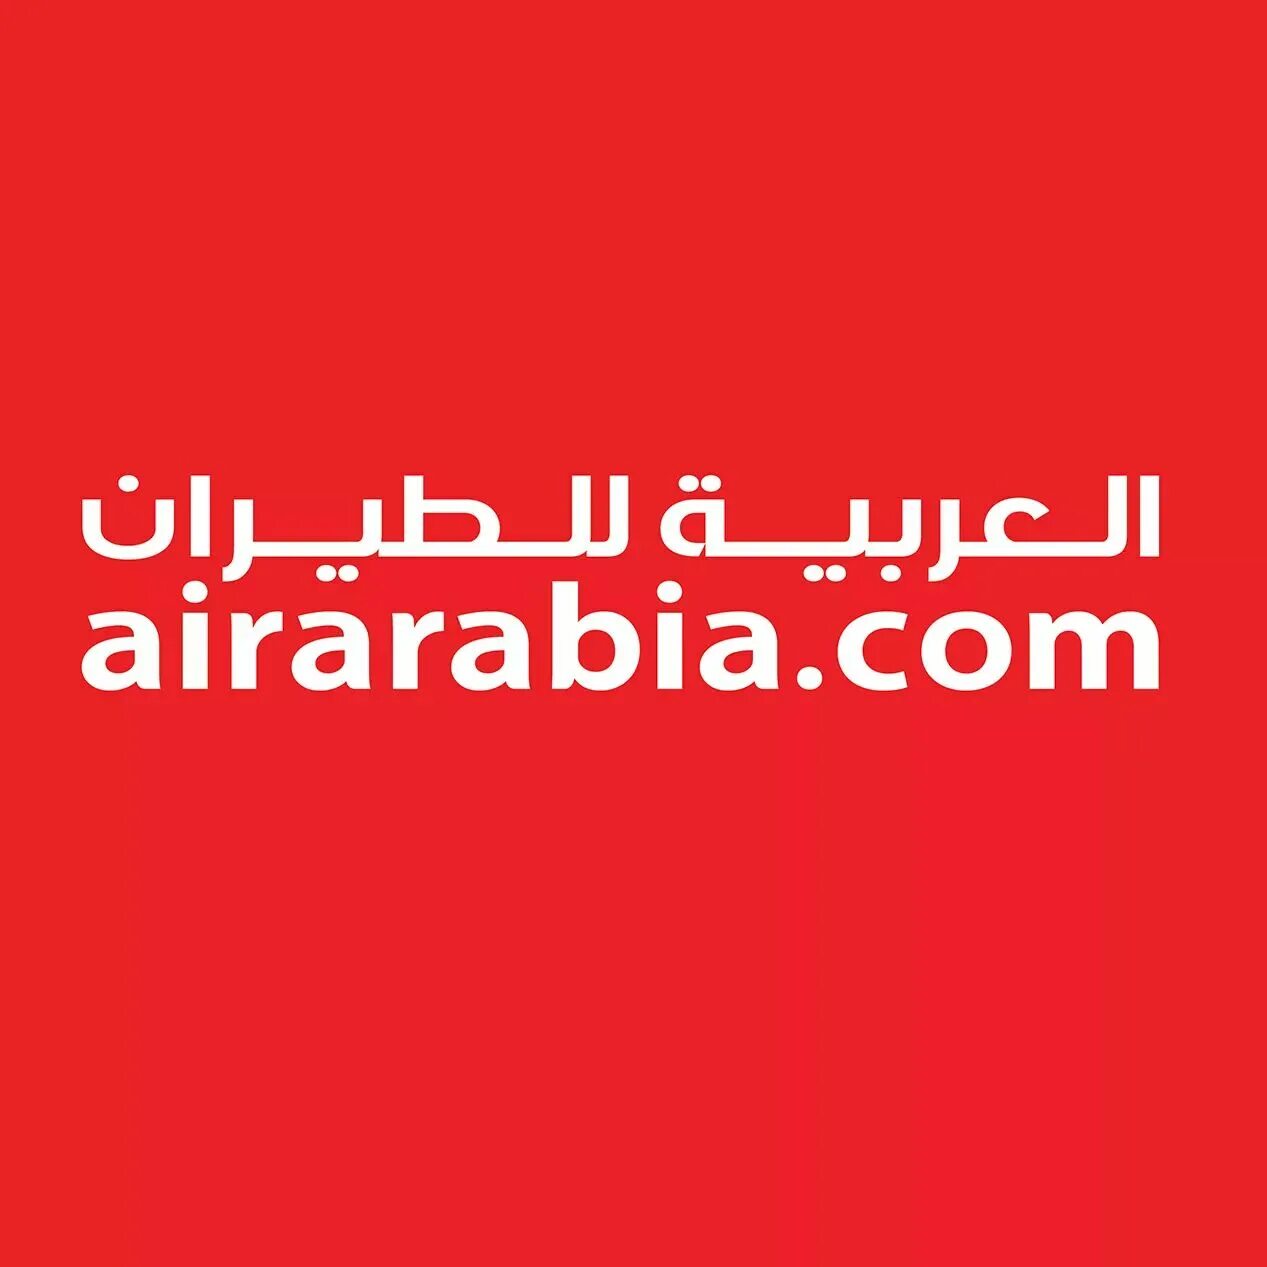 AIRARABIA.com. AIRARABIA logo. Air Arabia. Air Arabia логотип.